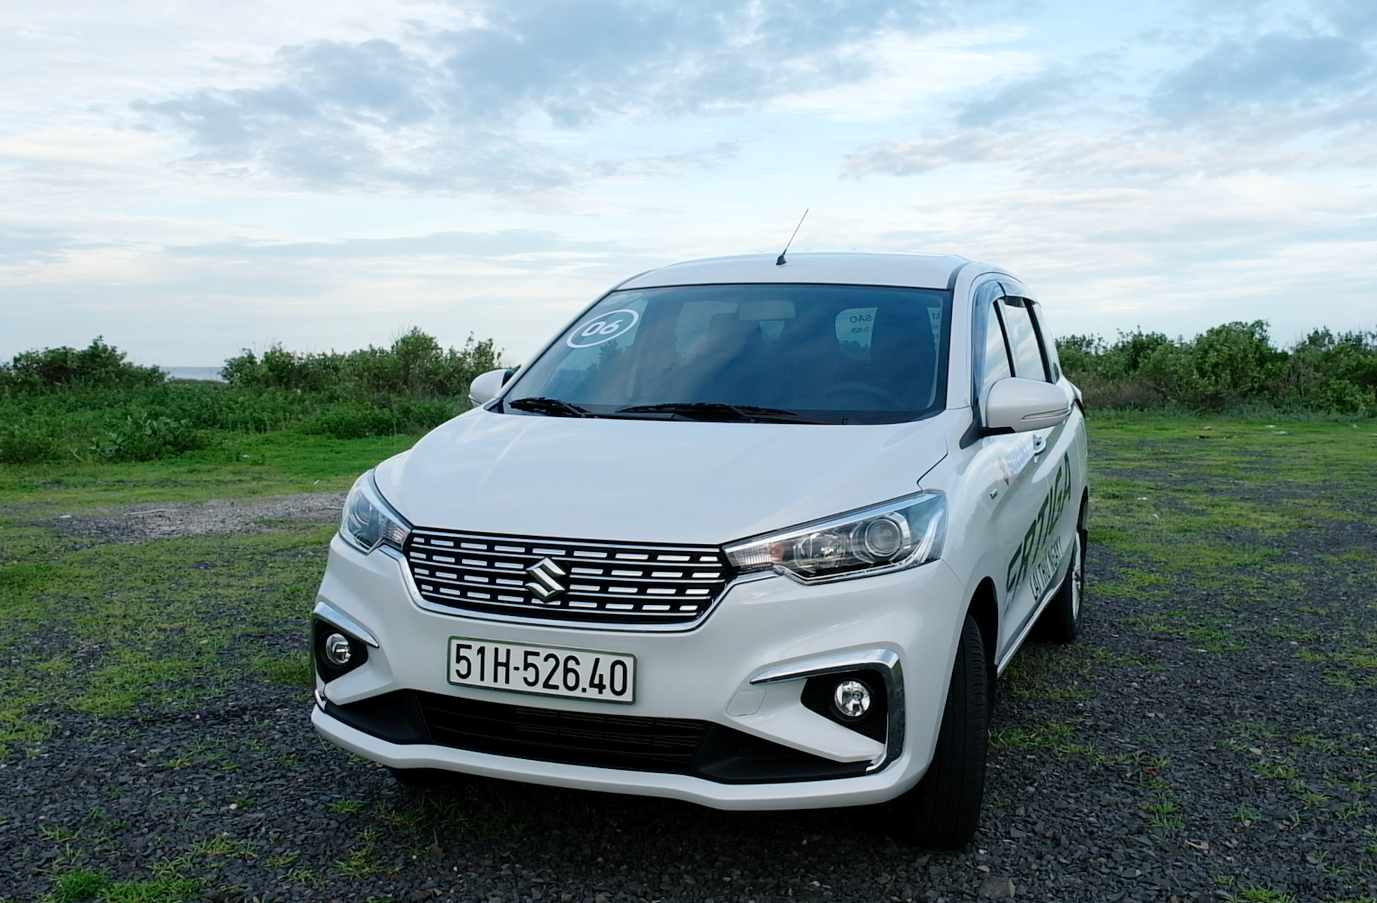 Đánh giá xe Suzuki Ertiga nhập khẩu  7 chỗ rẻ nhất tại Việt Nam  639  triệu  XEHAYVN 4k  YouTube